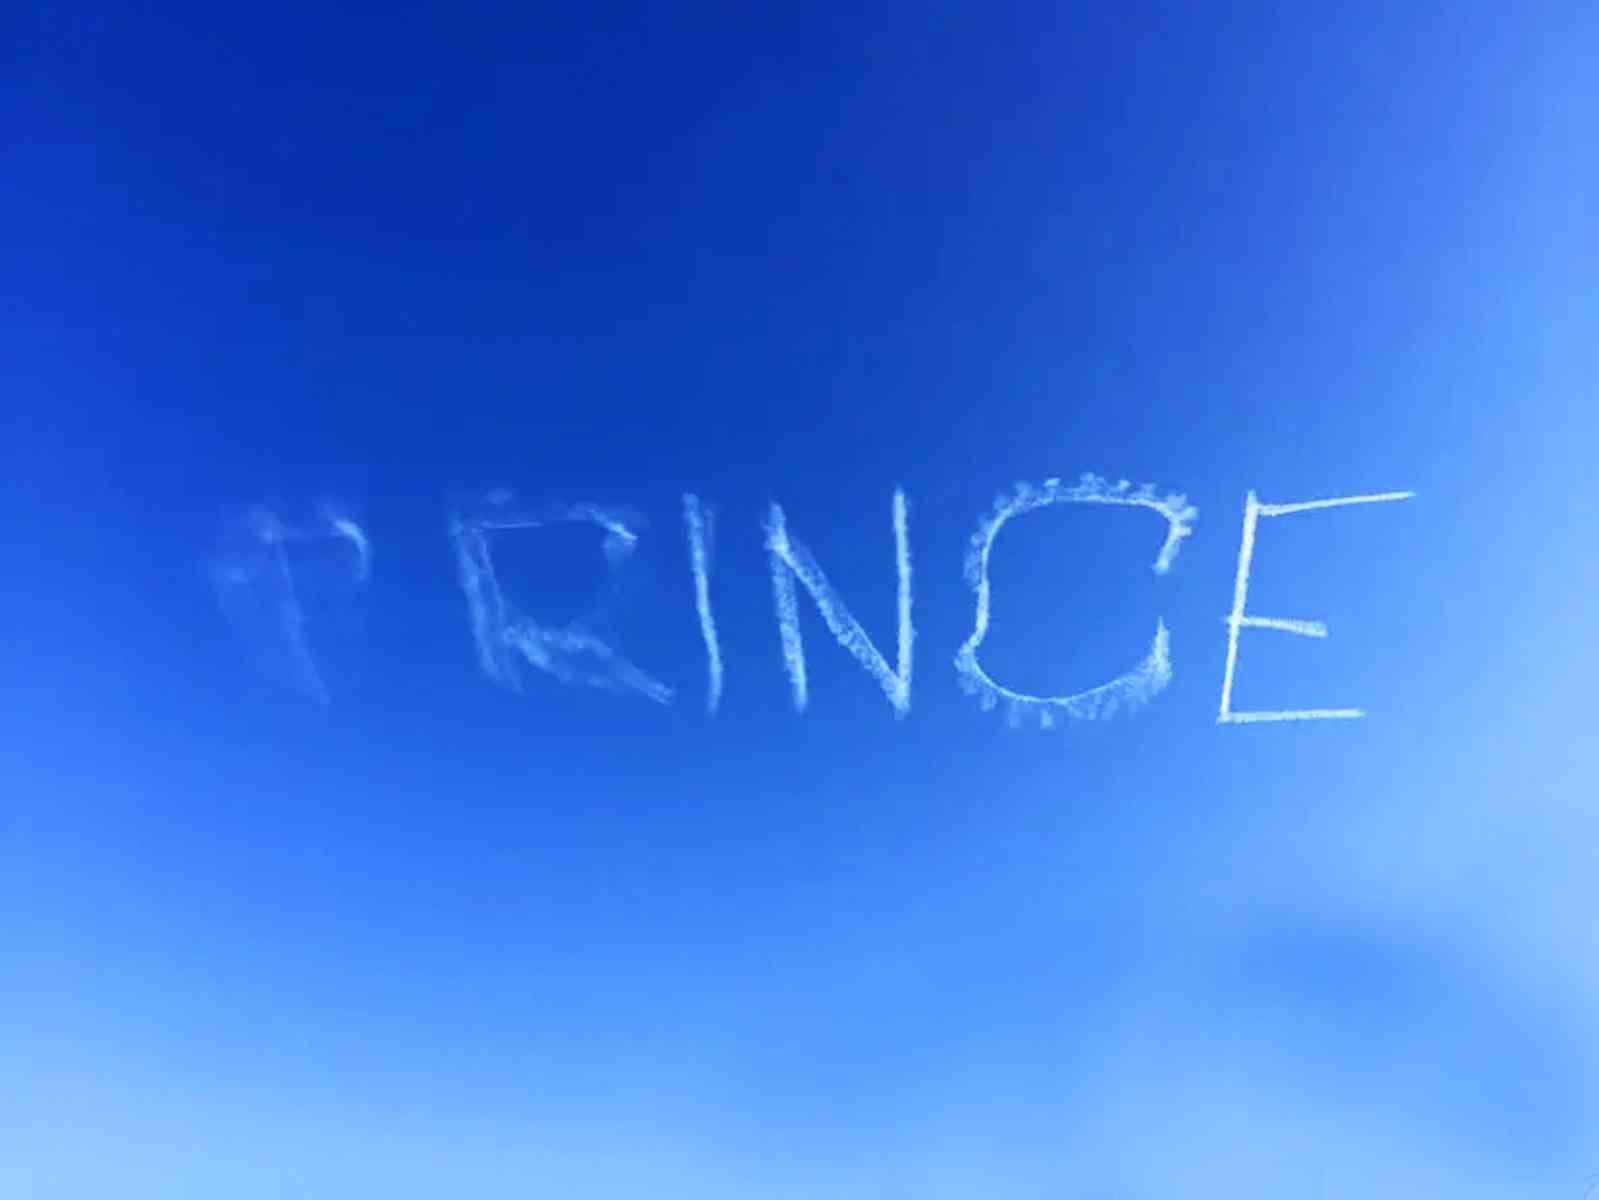 Schriftzug "Prince" am Himmel